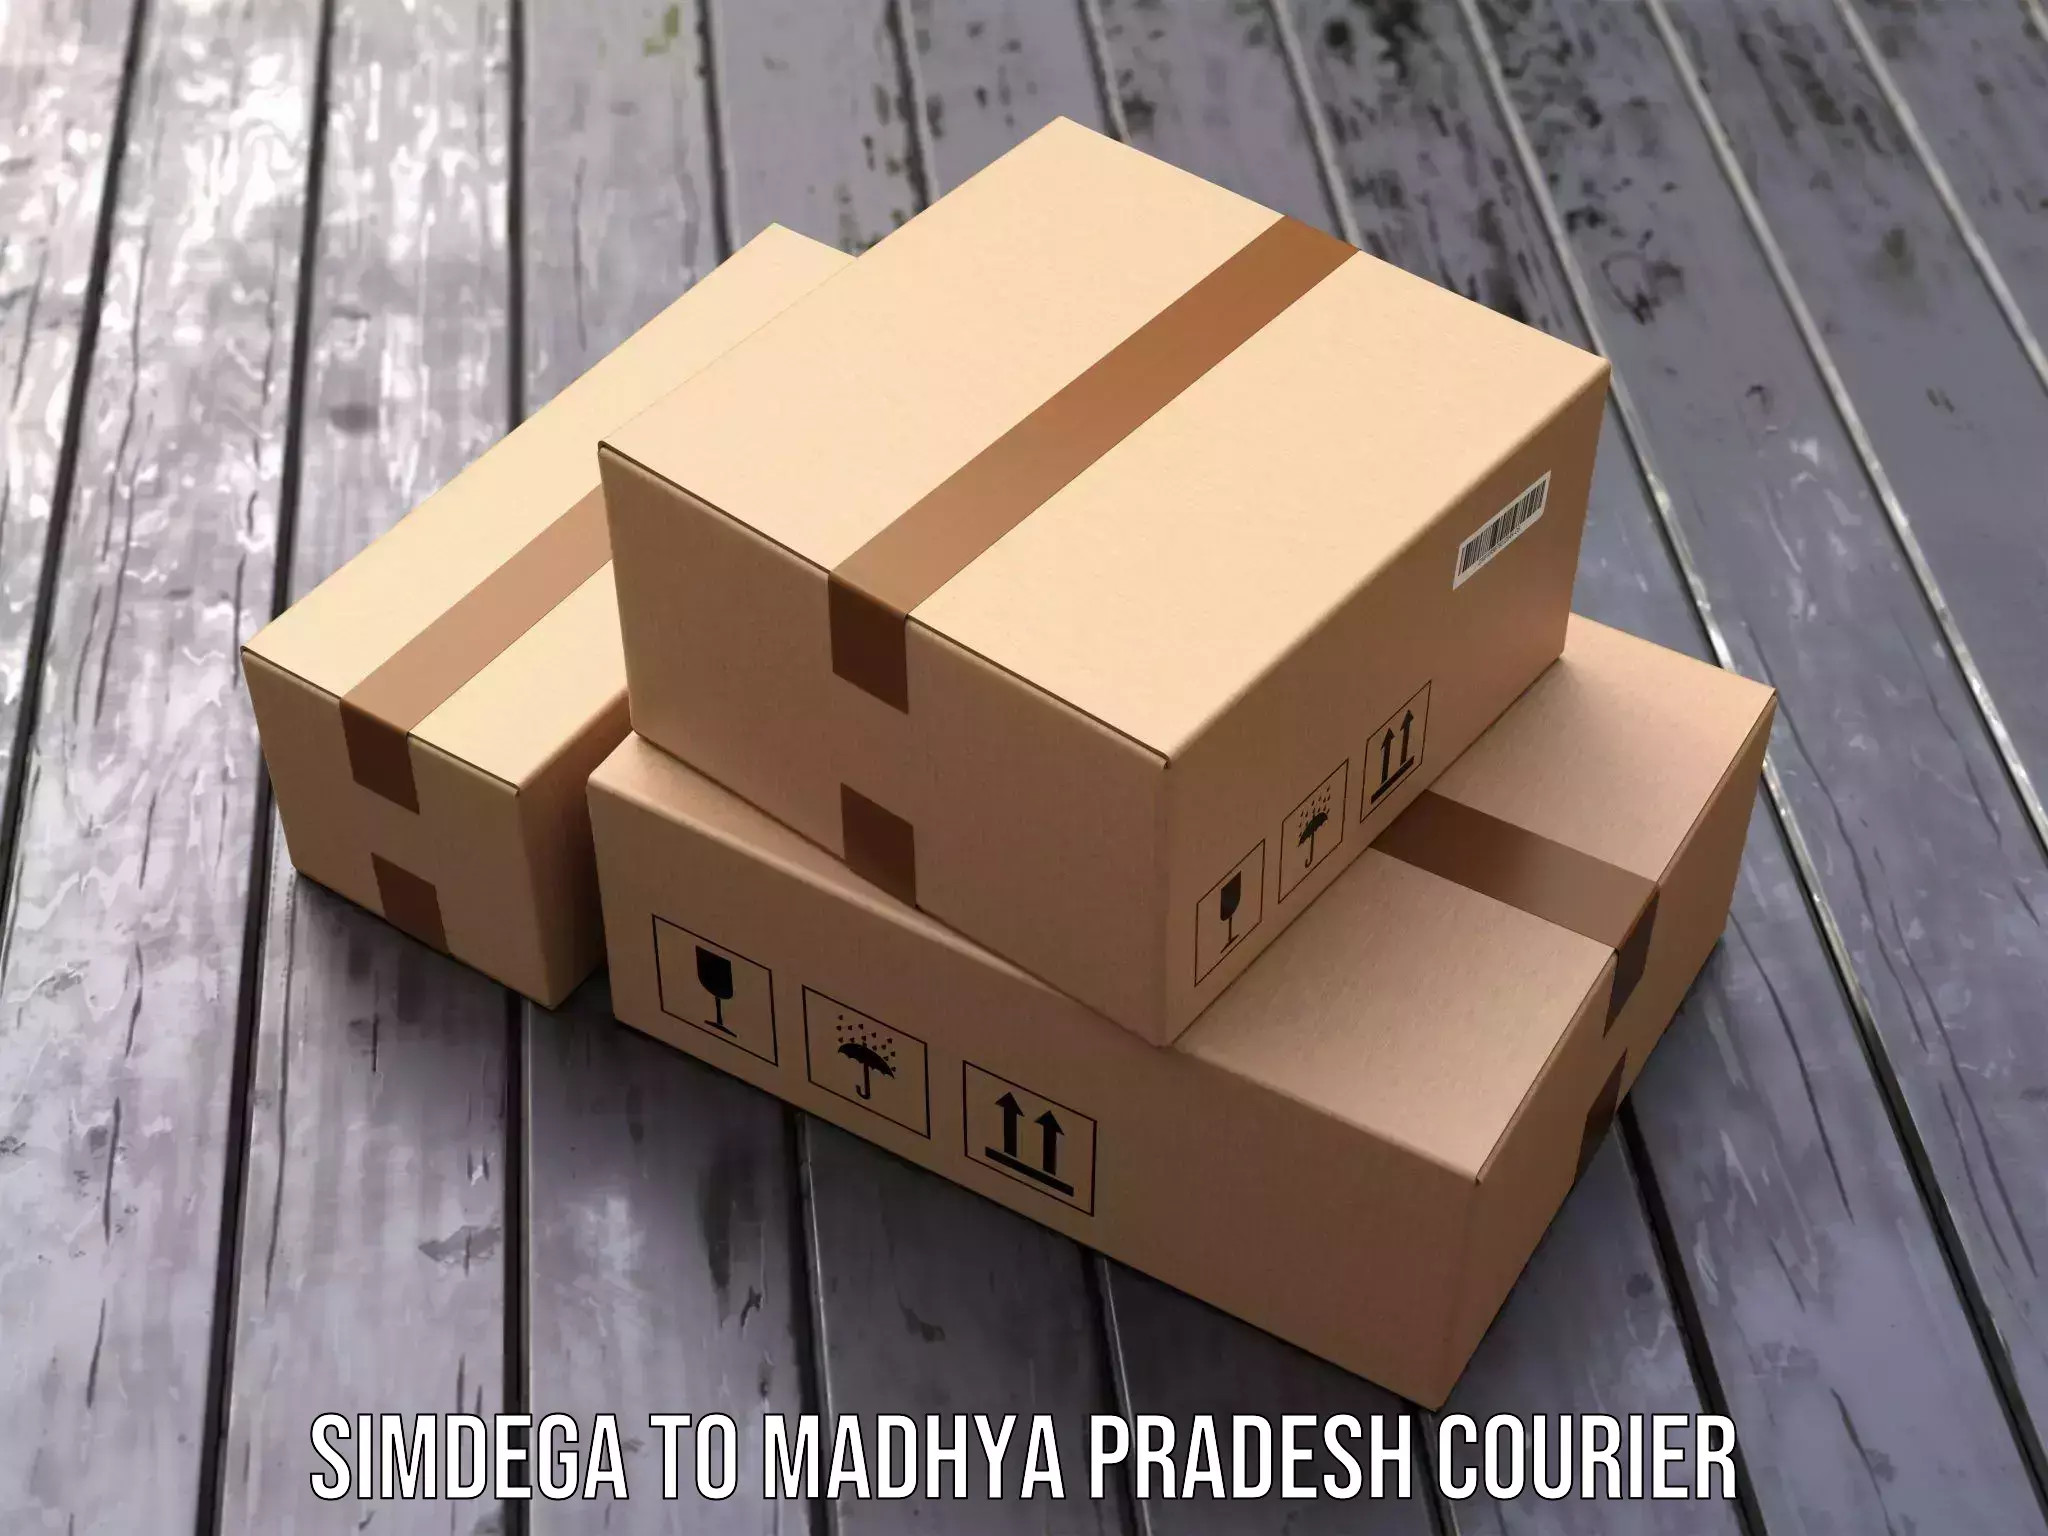 Easy access courier services Simdega to Banda Sagar